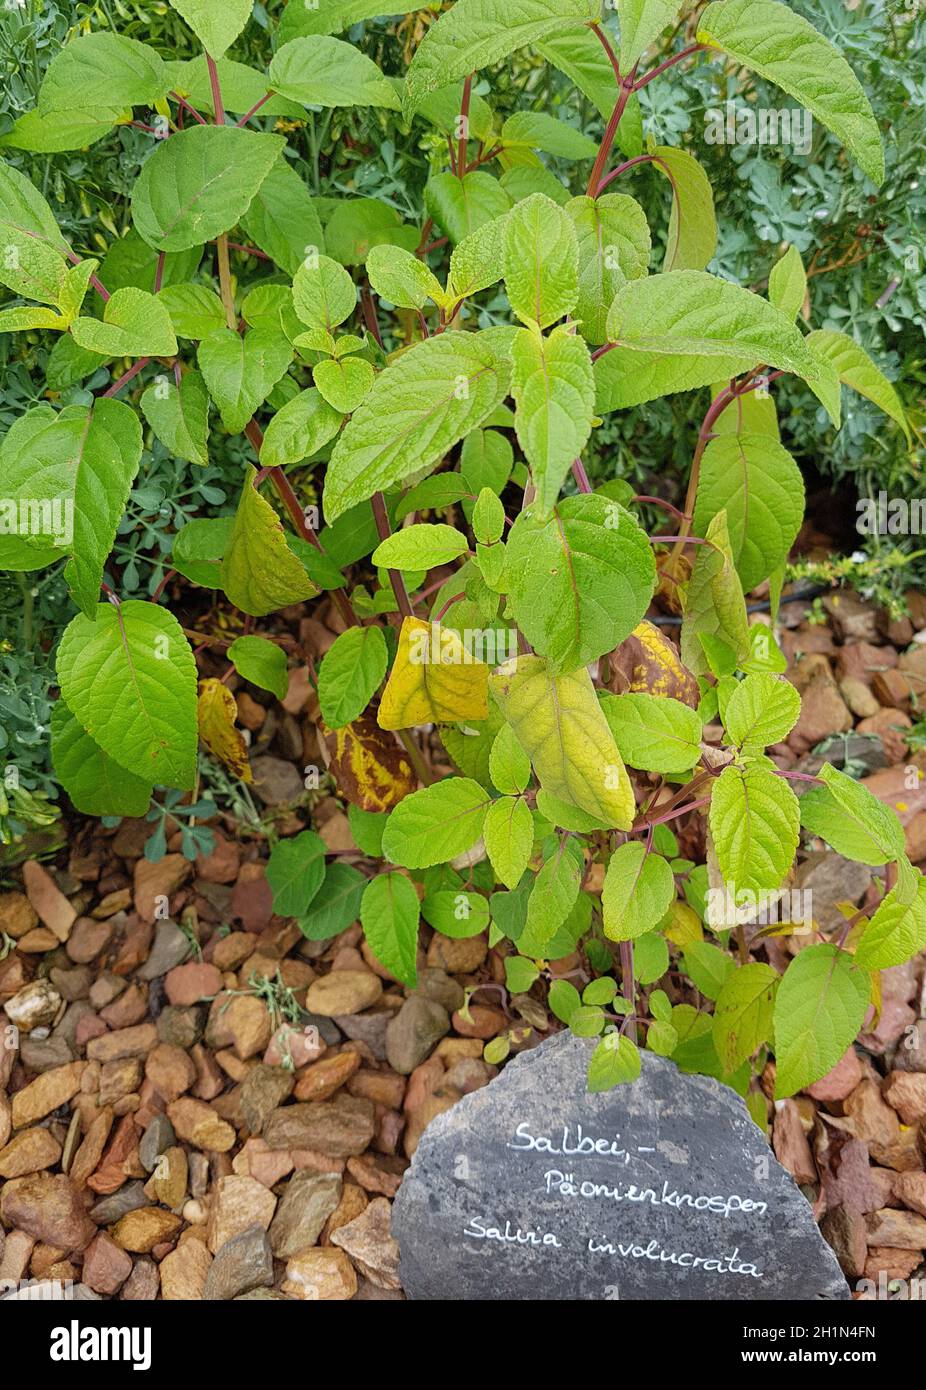 Salbei, Paeonienknospen, Salvia involucrata, ist eine wichtige Heilpflanze und eine Duftpflanze mit blauen Blueten. You is a schoen staude and wi Stockfoto